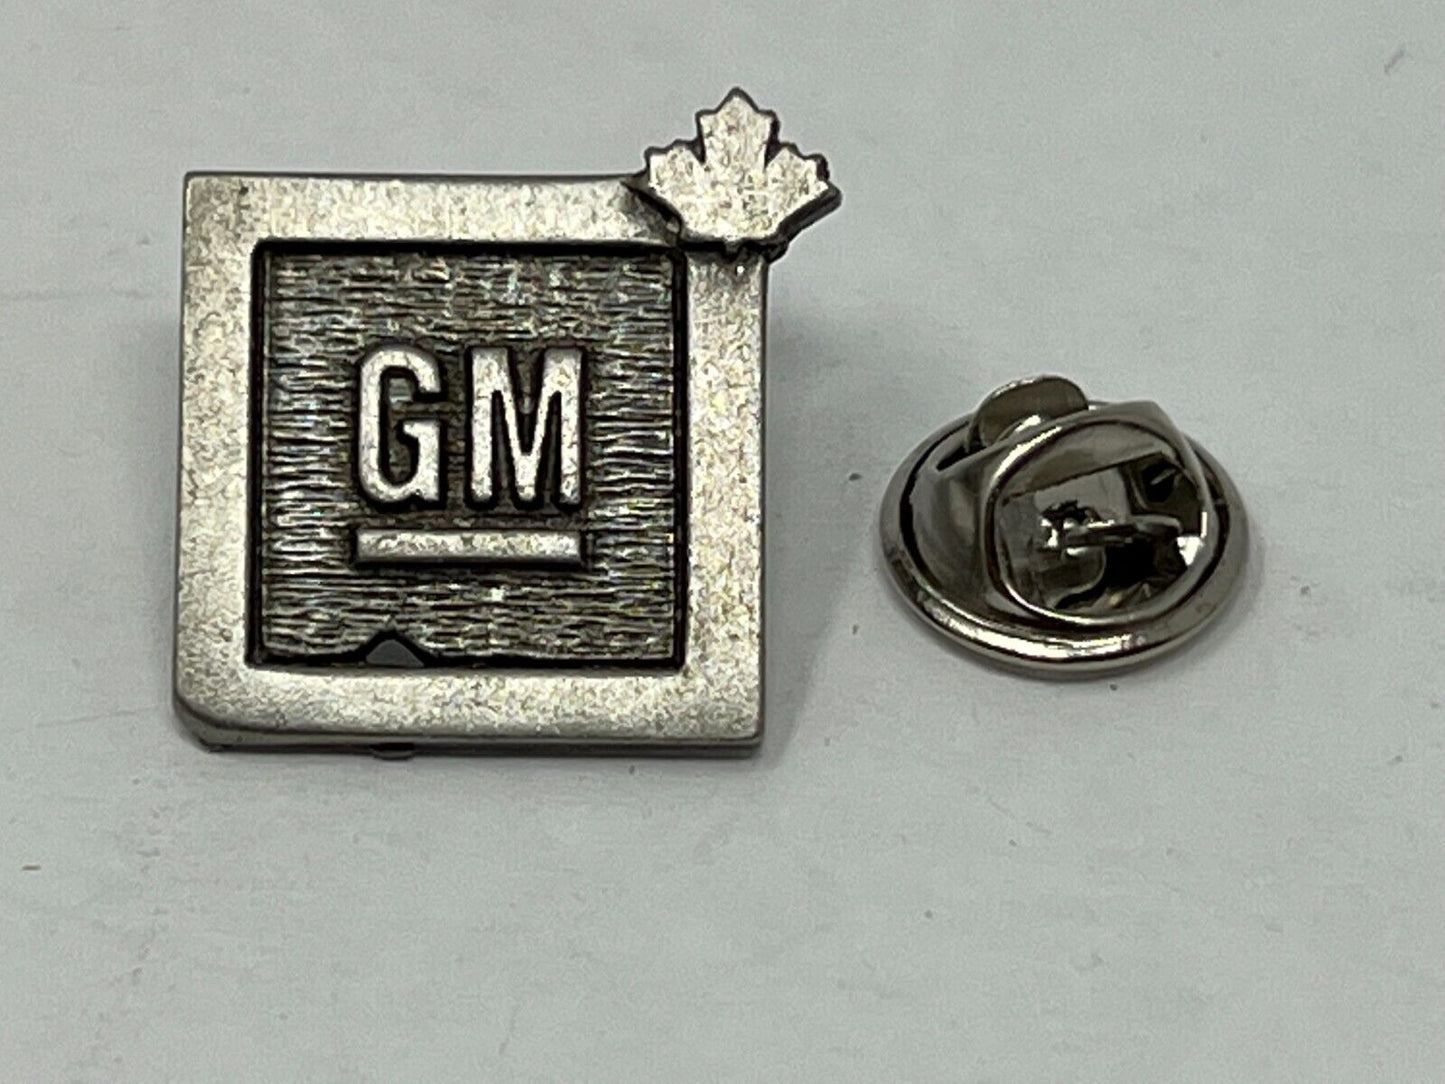 GM General Motors Maple Leaf Automotive Lapel Pin